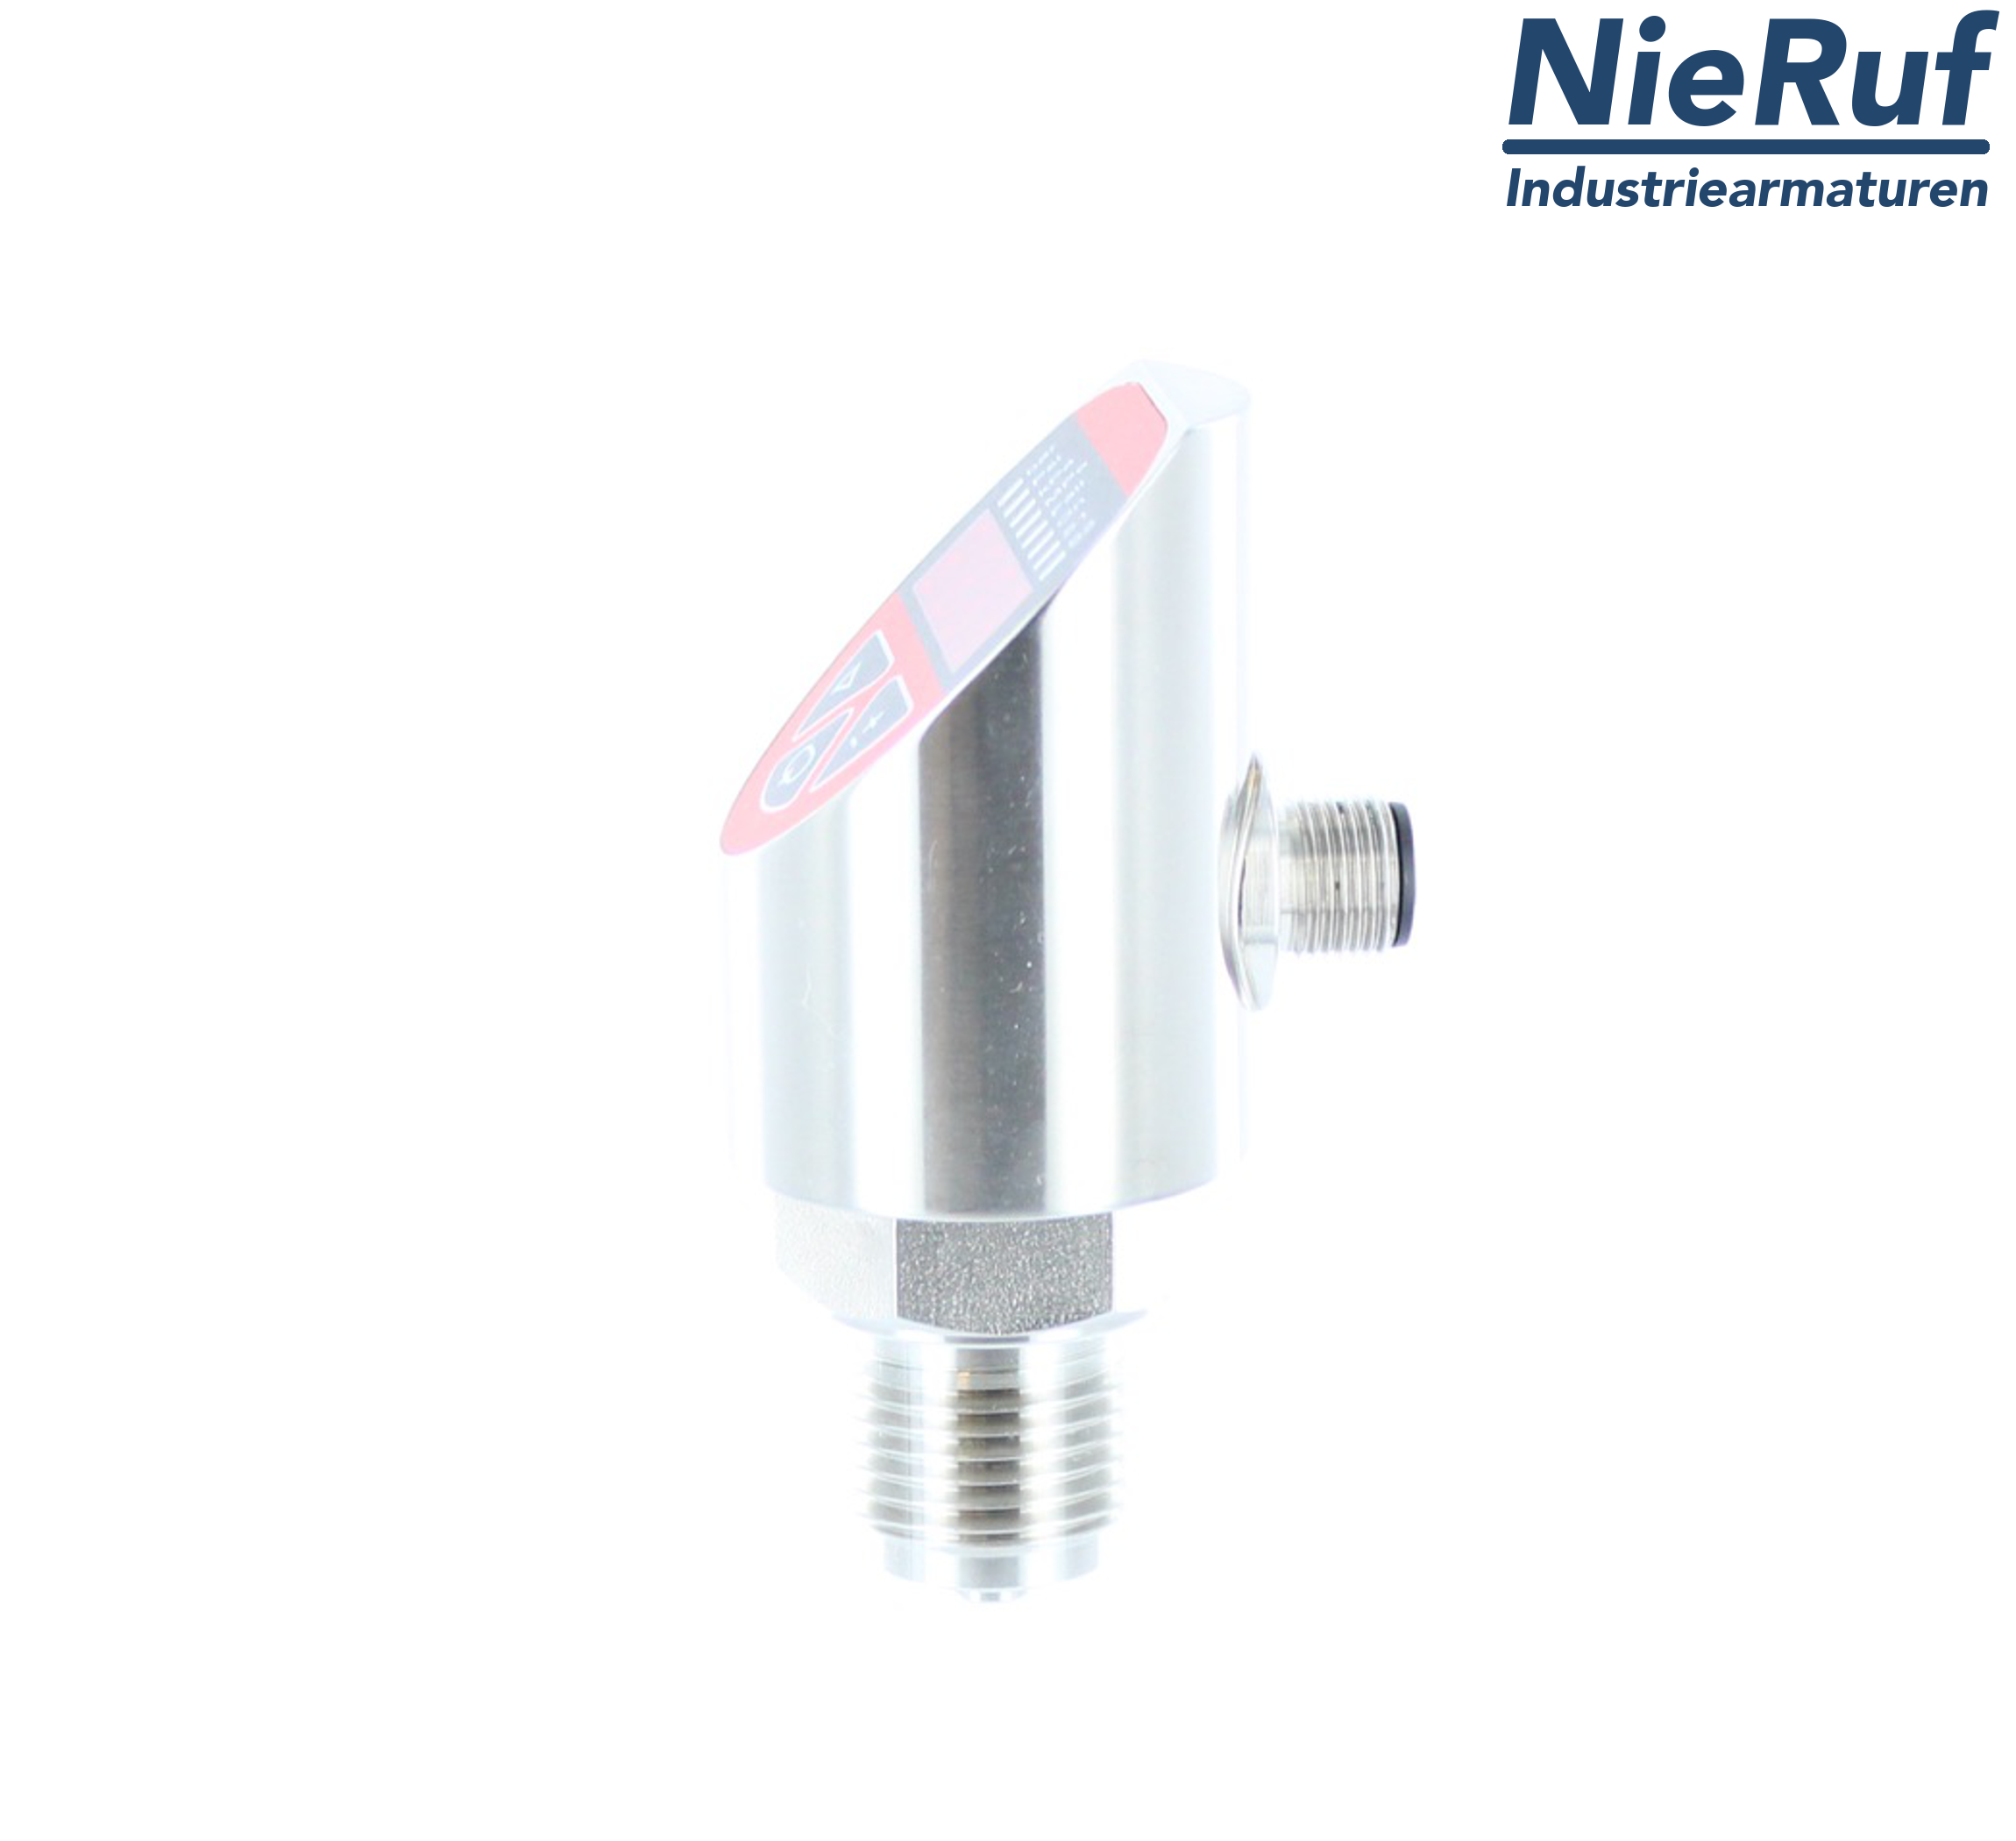 digital pressure sensor G 1/2" B 4-wire: 1xPNP, 1x4 - 20mA FPM 0,0 - 320,0 bar